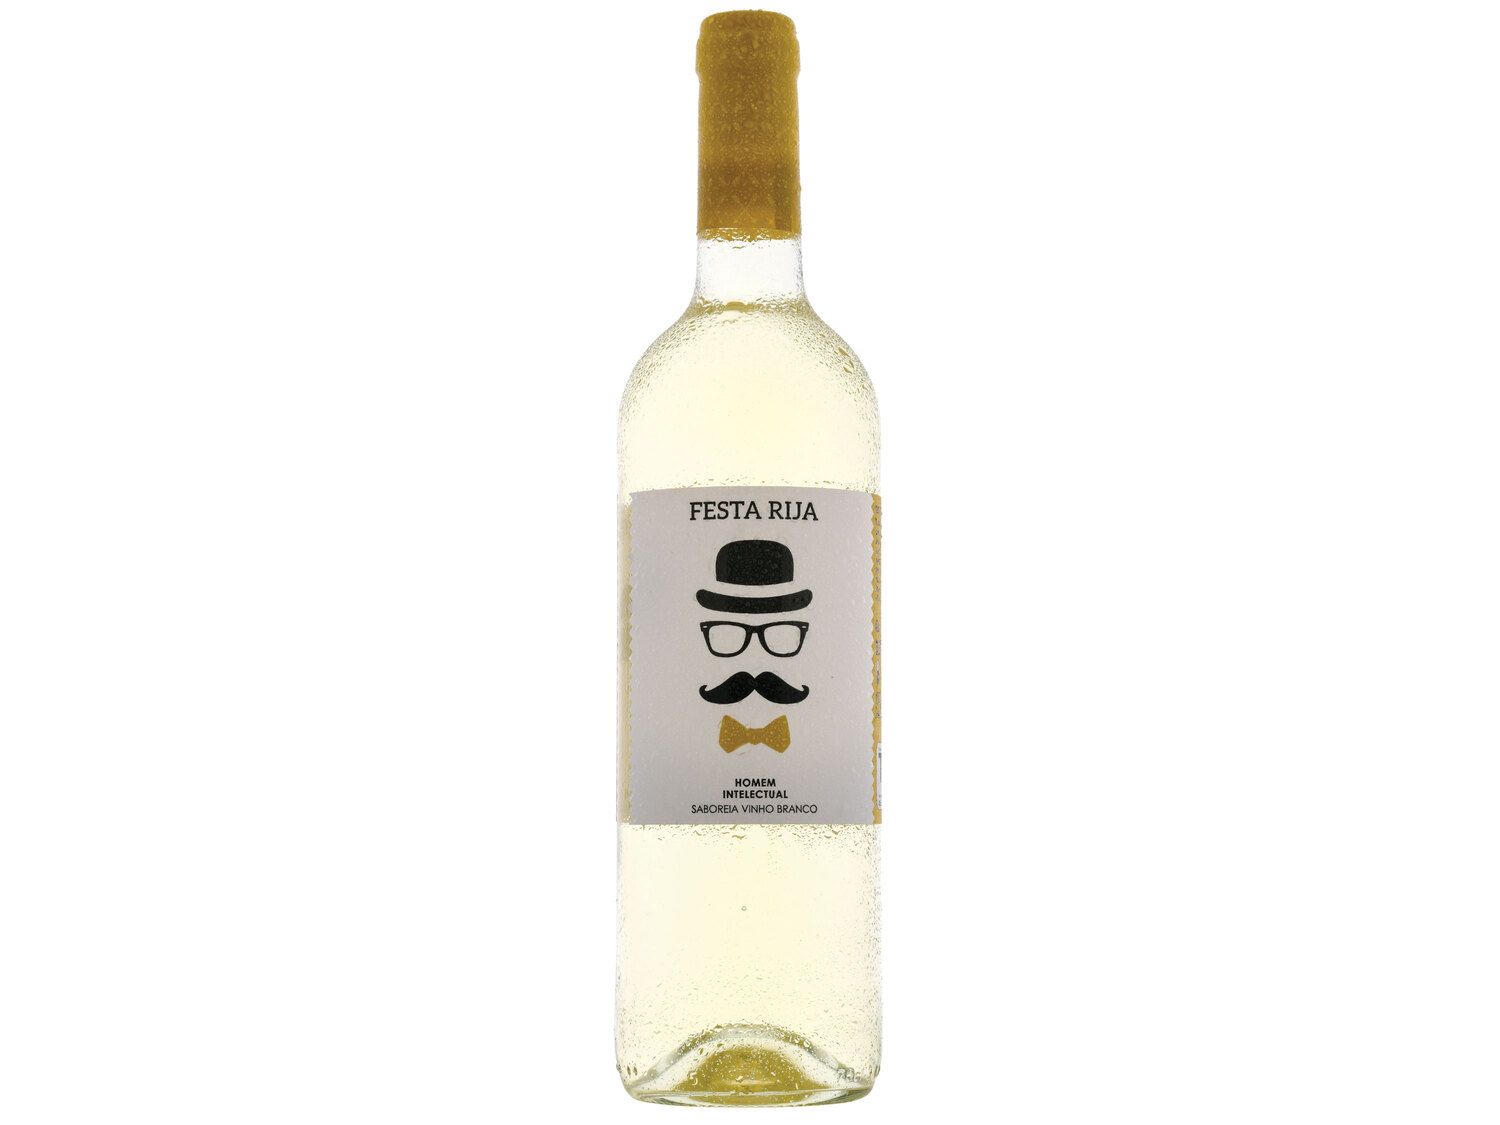 Festa Rija® Vinho Branco Regional Tejo - at Lidl